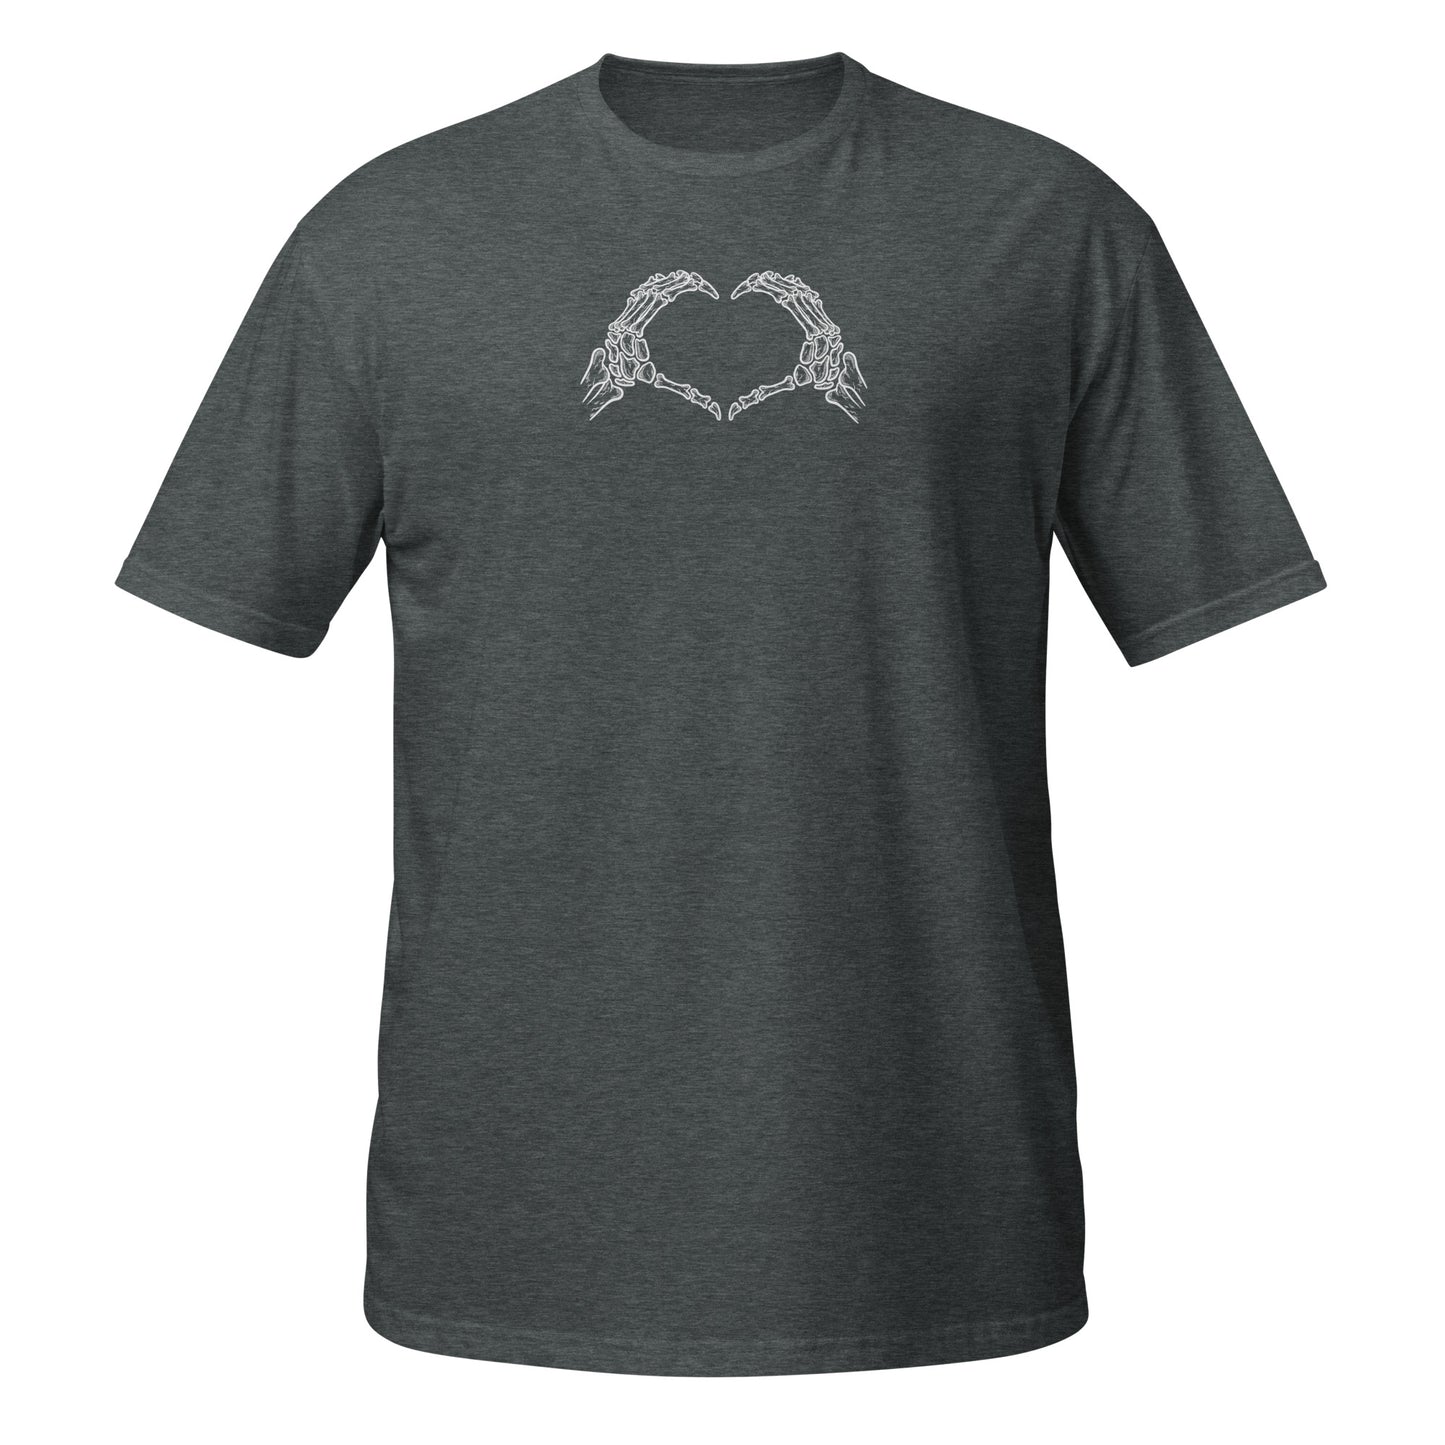 "Cal Trask Traskforce" Short-Sleeve Unisex T-Shirt